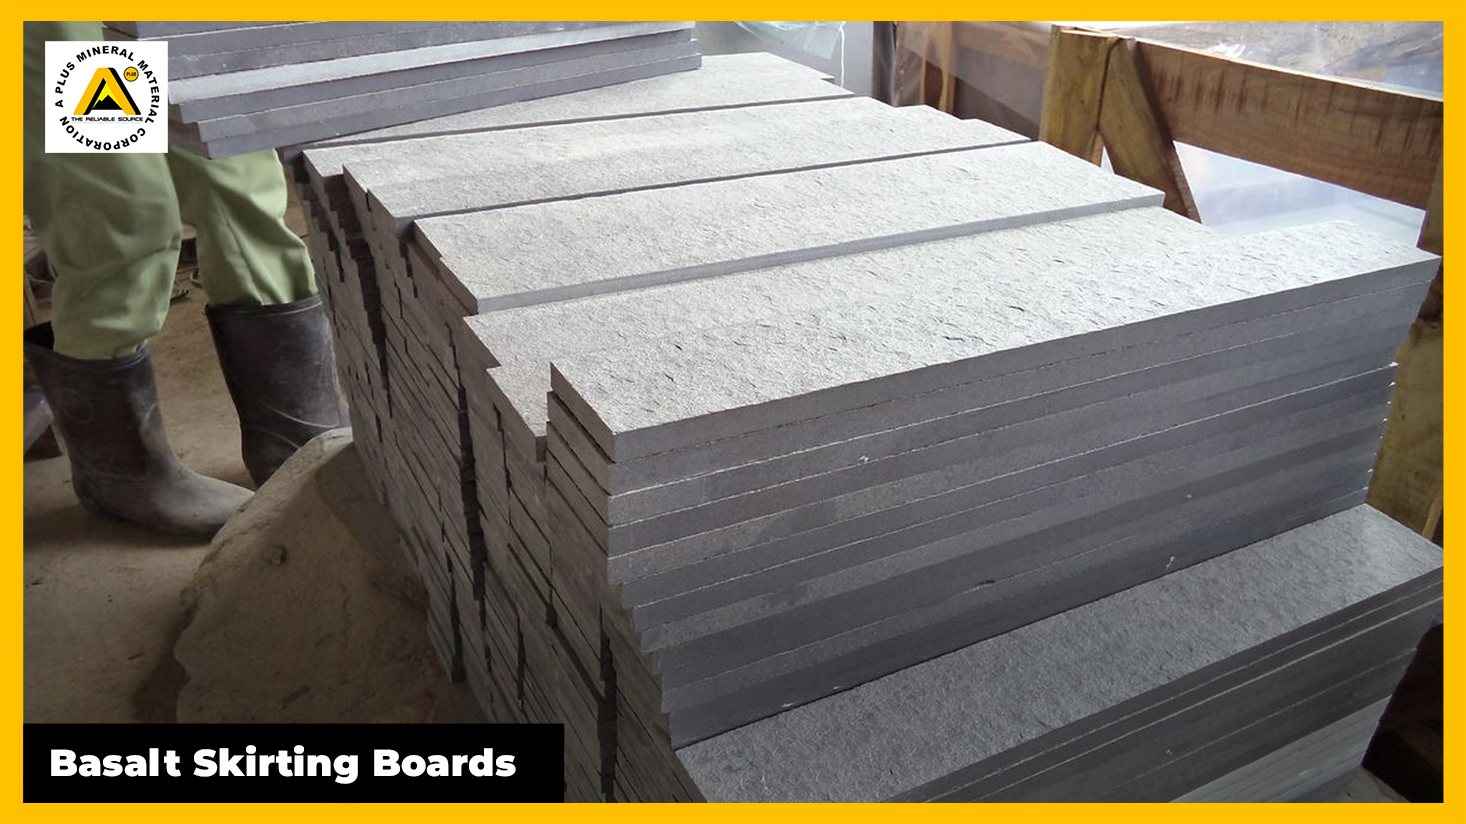 Basalt Skirting Boards